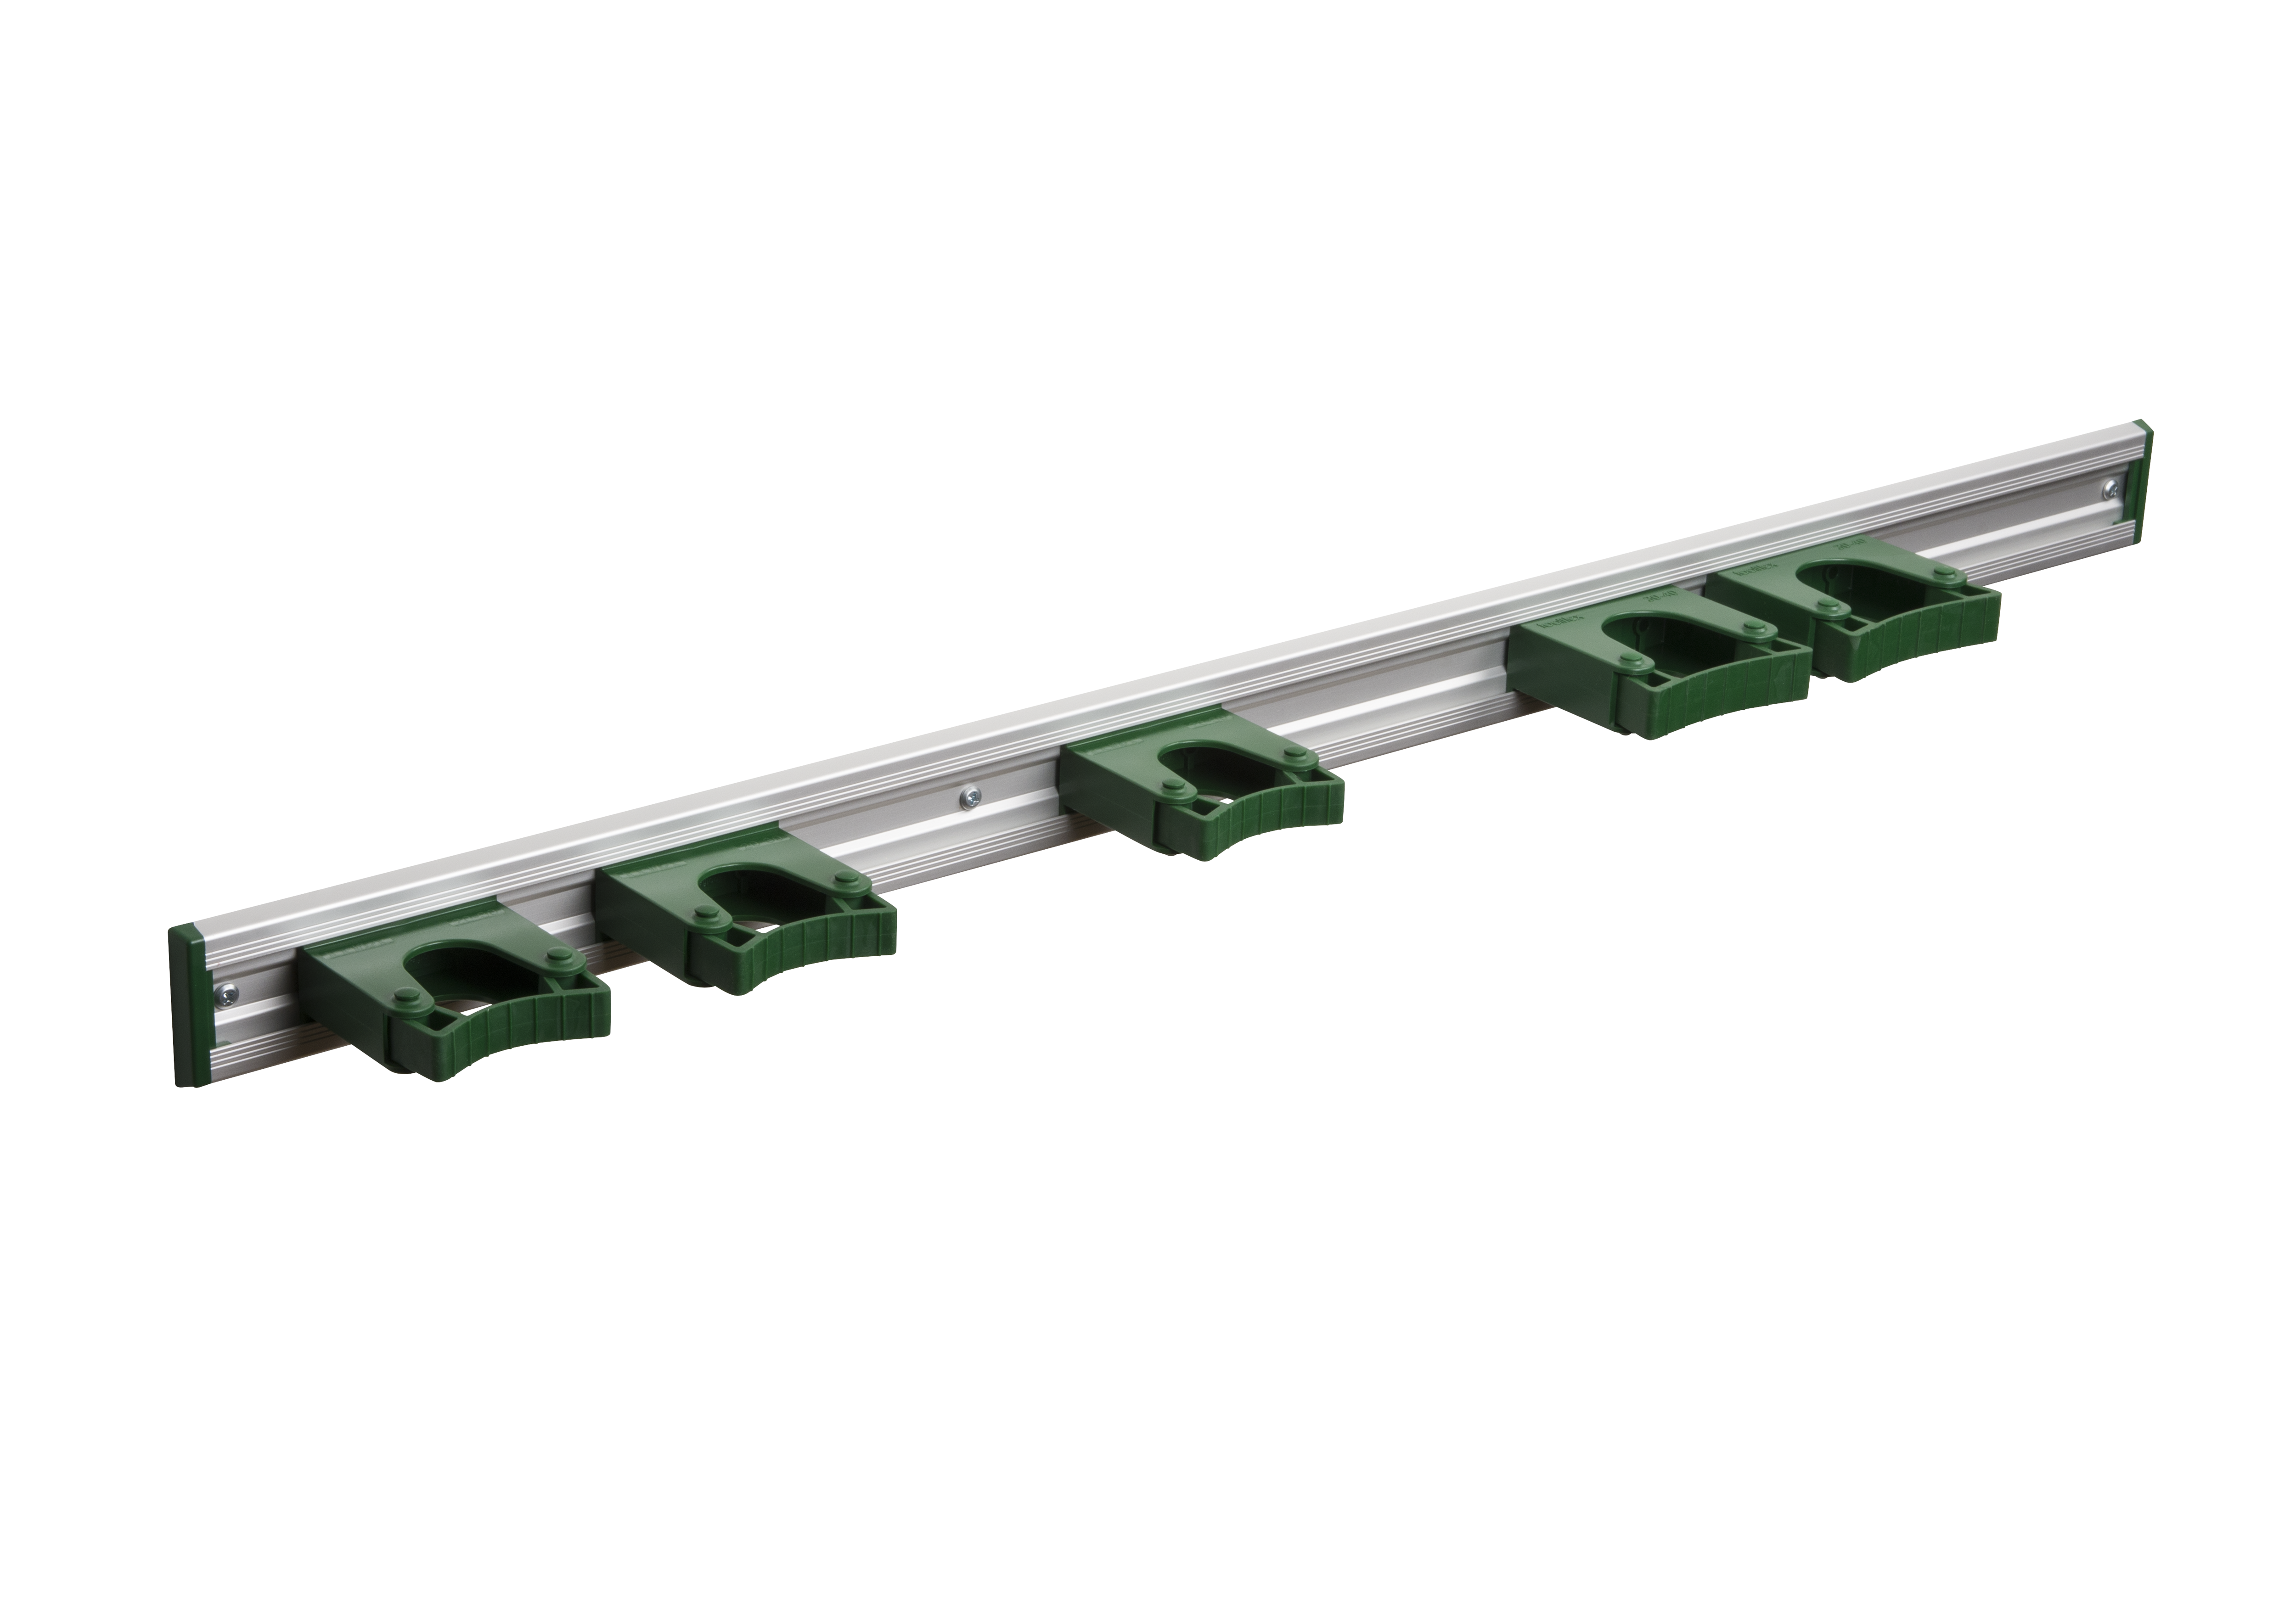 Toolflex Alu-Schiene 90 cm mit grünen Endstücken, bestückt mit 3 Halter 20-30mm und 2 Haltern 30-40 mm in grün